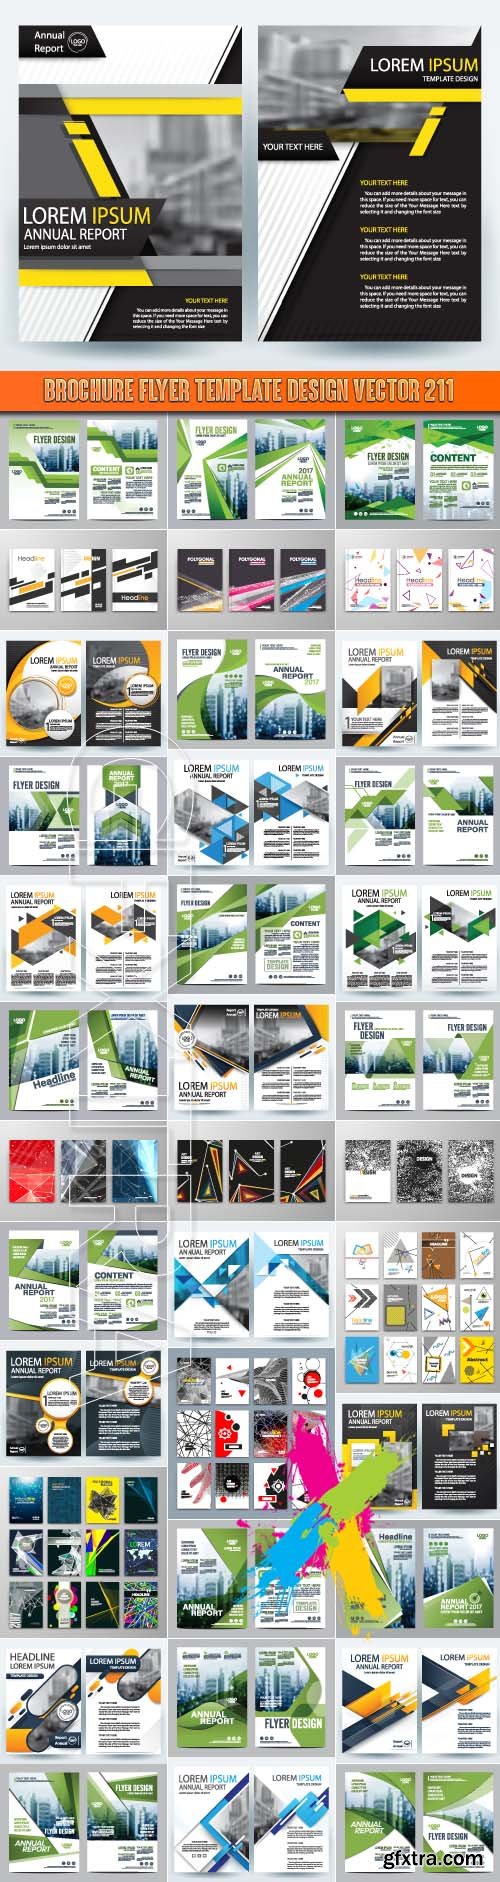 Brochure flyer template design vector 211